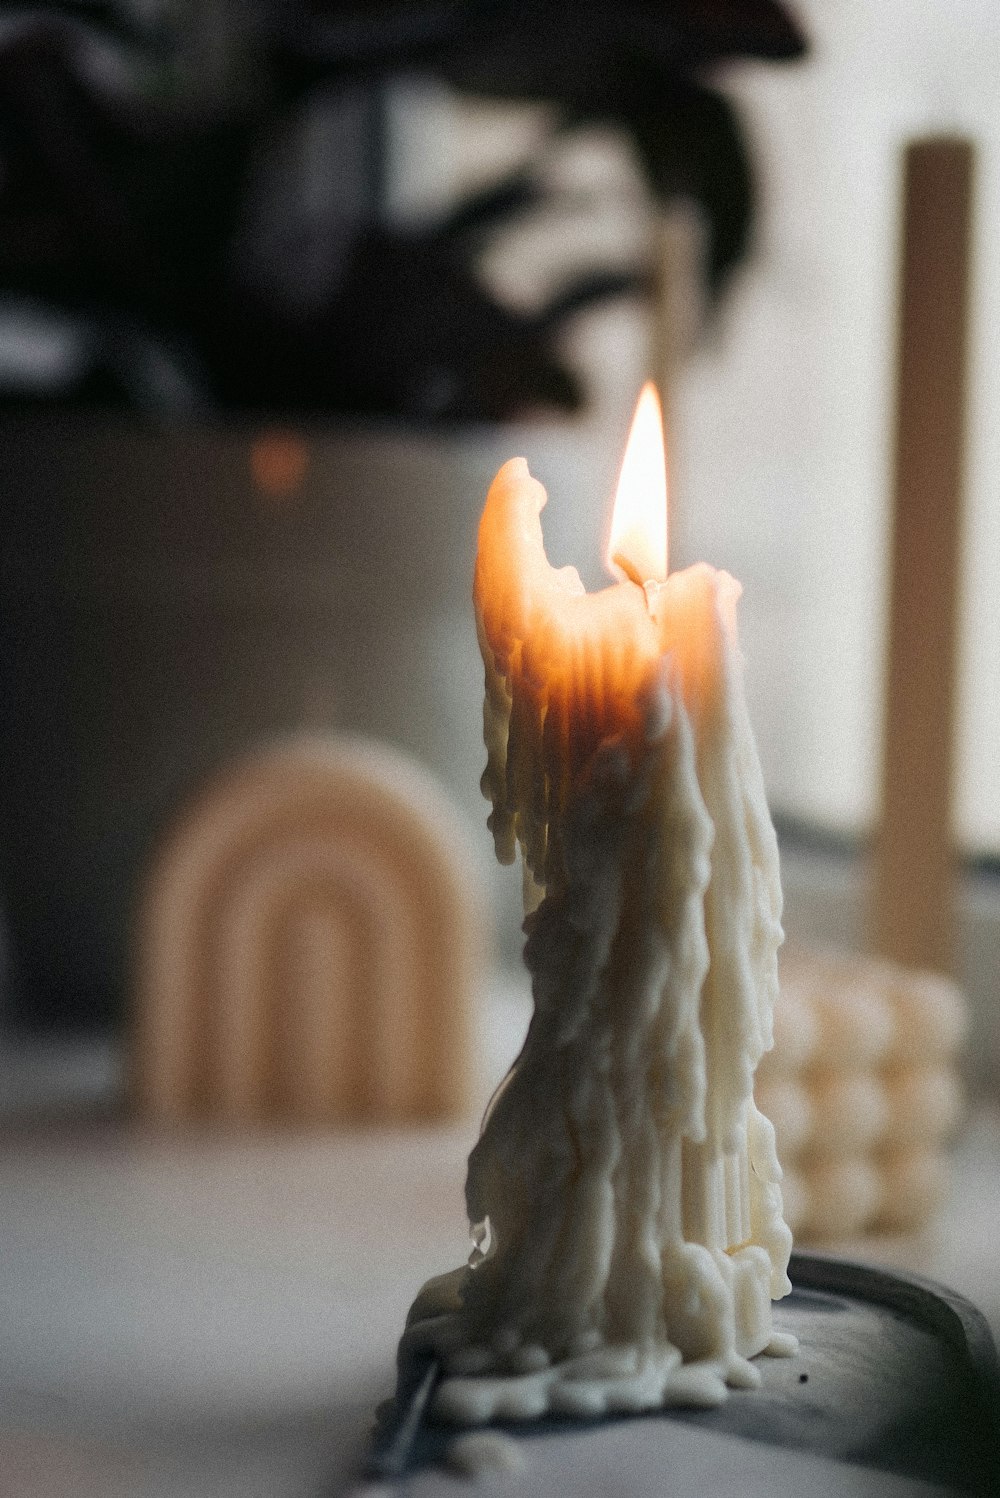 테이블 위에 앉아 있는 촛불